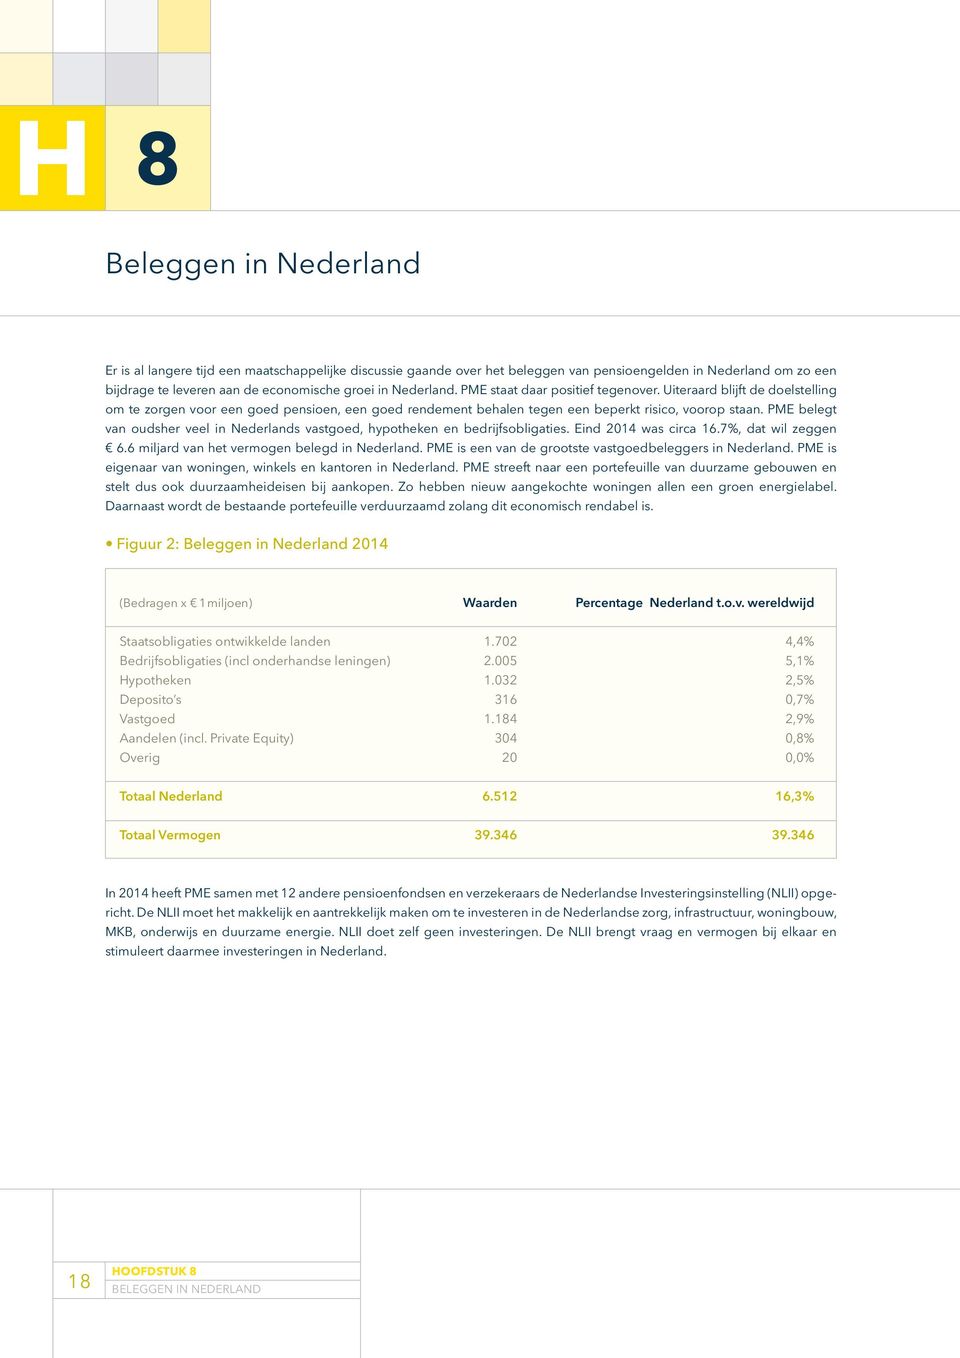 PME belegt van oudsher veel in Nederlands vastgoed, hypotheken en bedrijfsobligaties. Eind 2014 was circa 16.7%, dat wil zeggen 6.6 miljard van het vermogen belegd in Nederland.